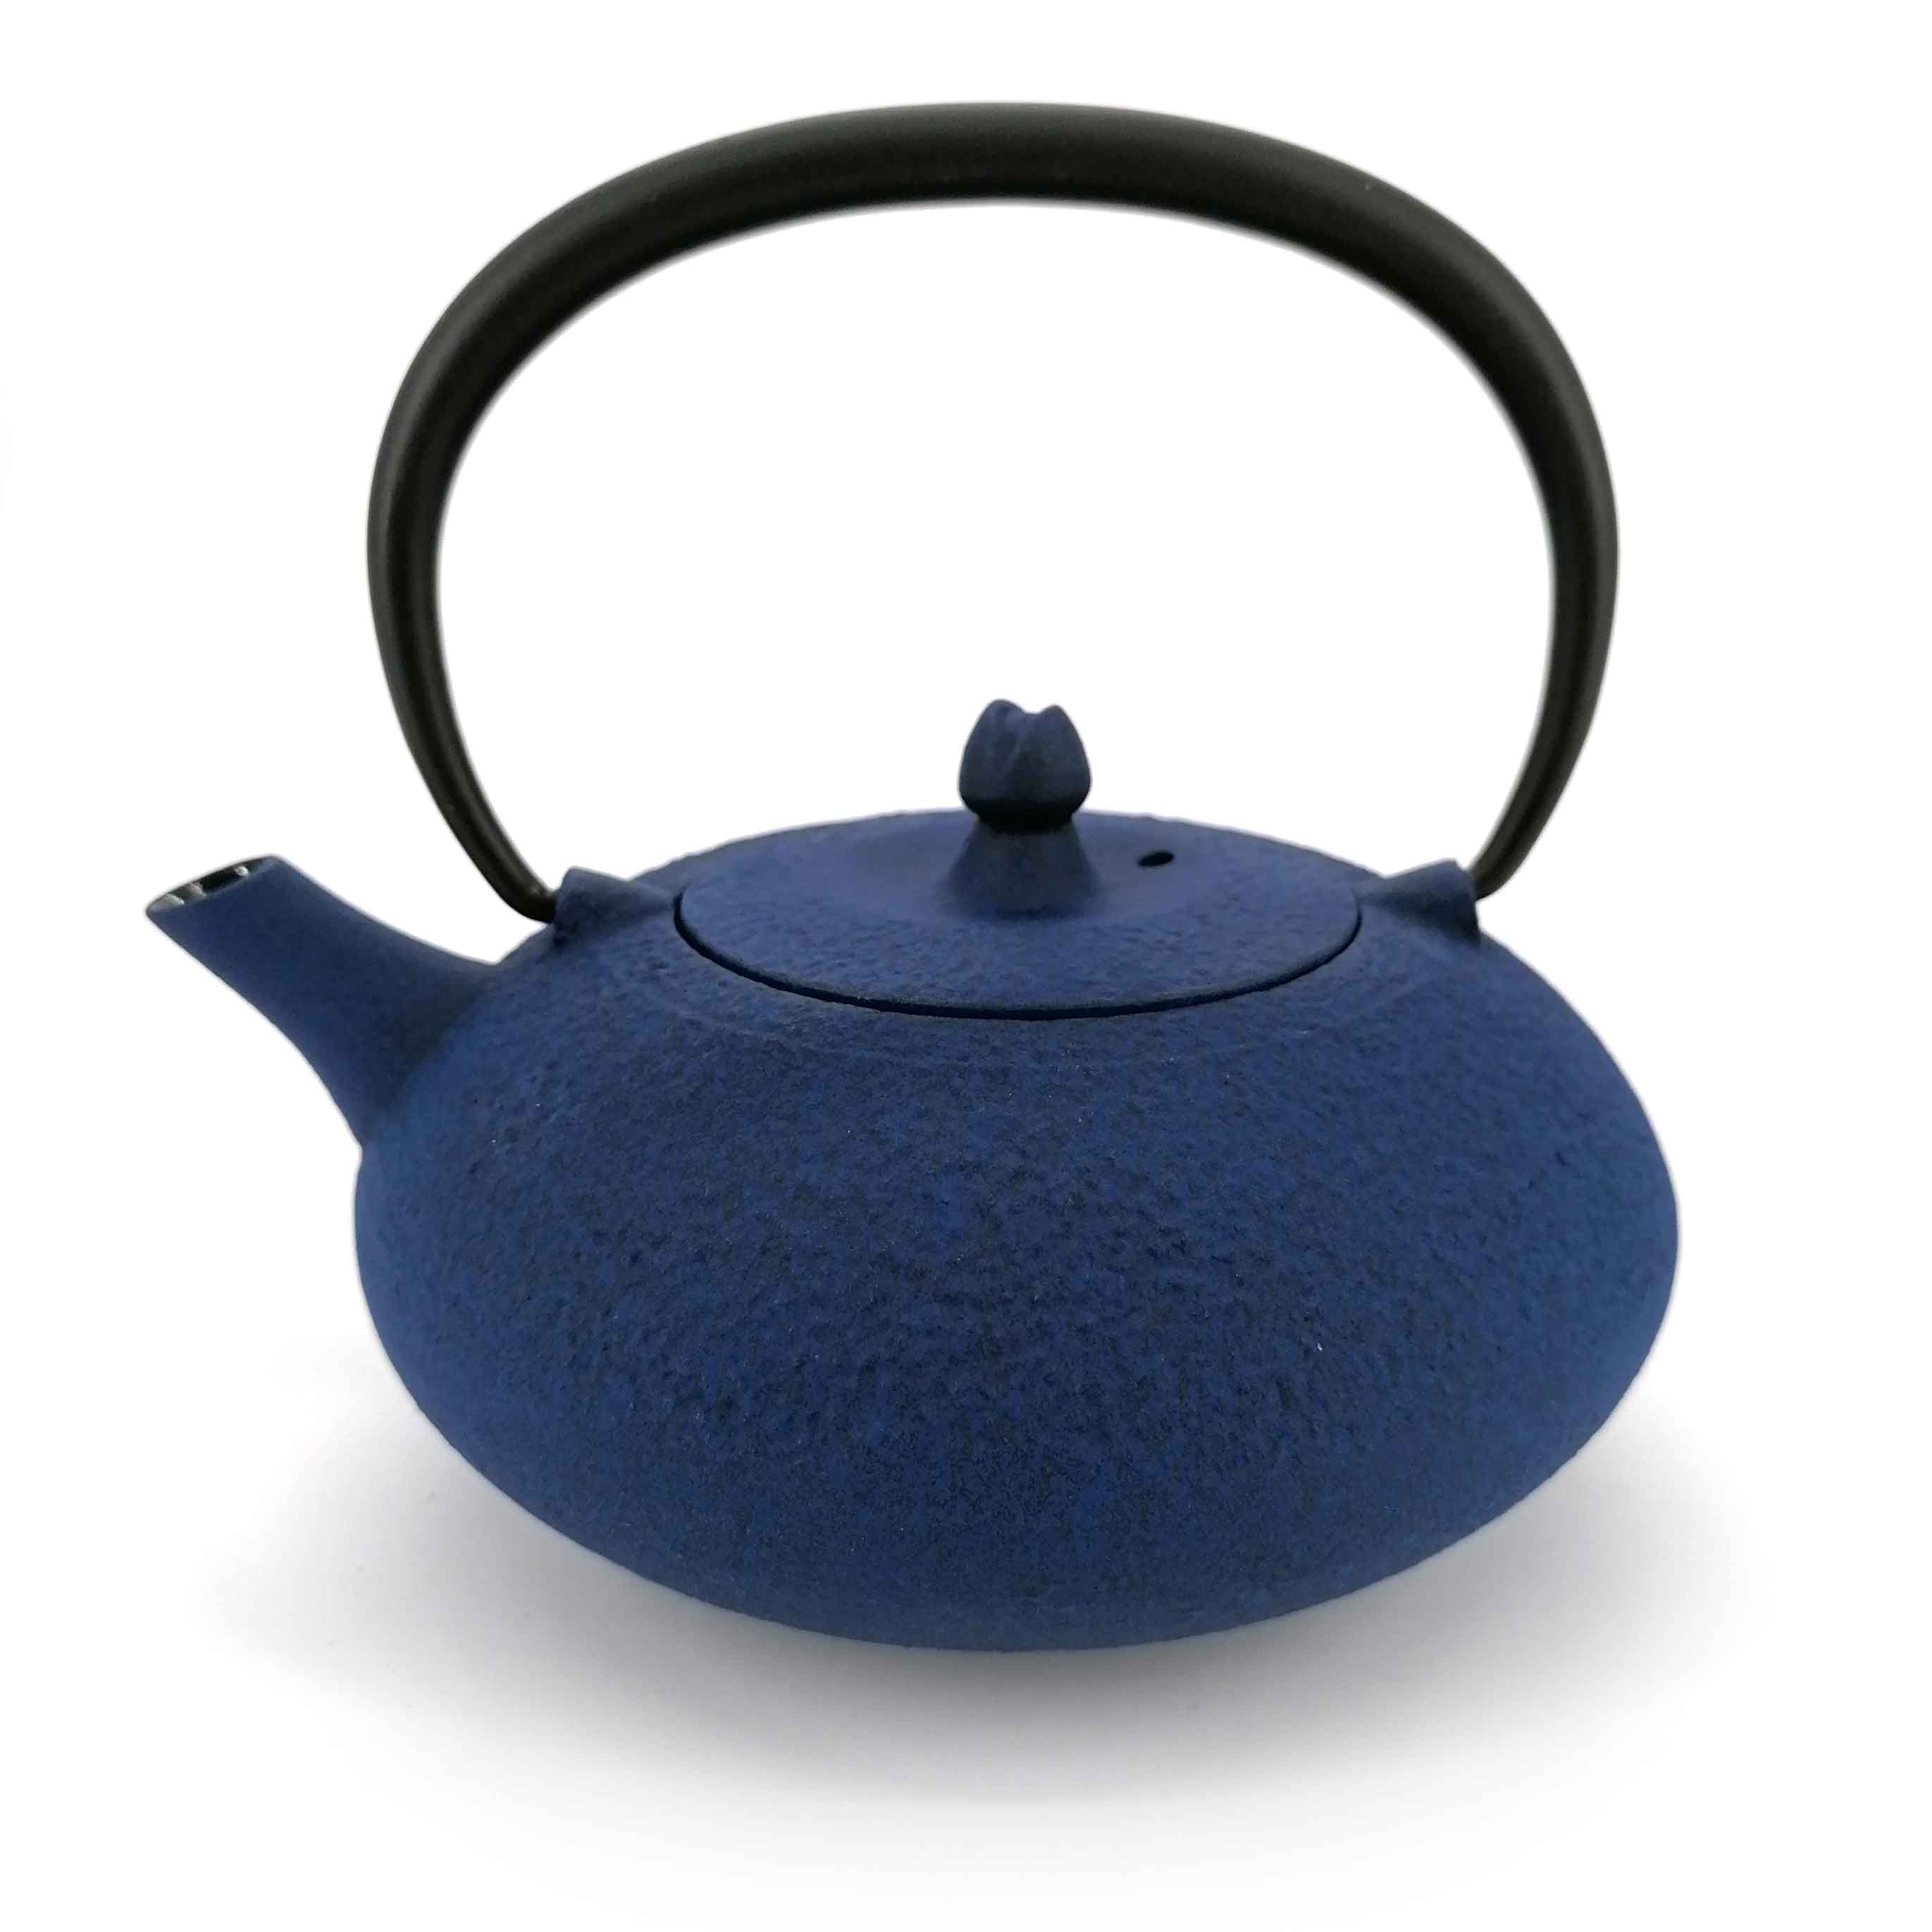 Buy Teapot Online in India - IKIRU